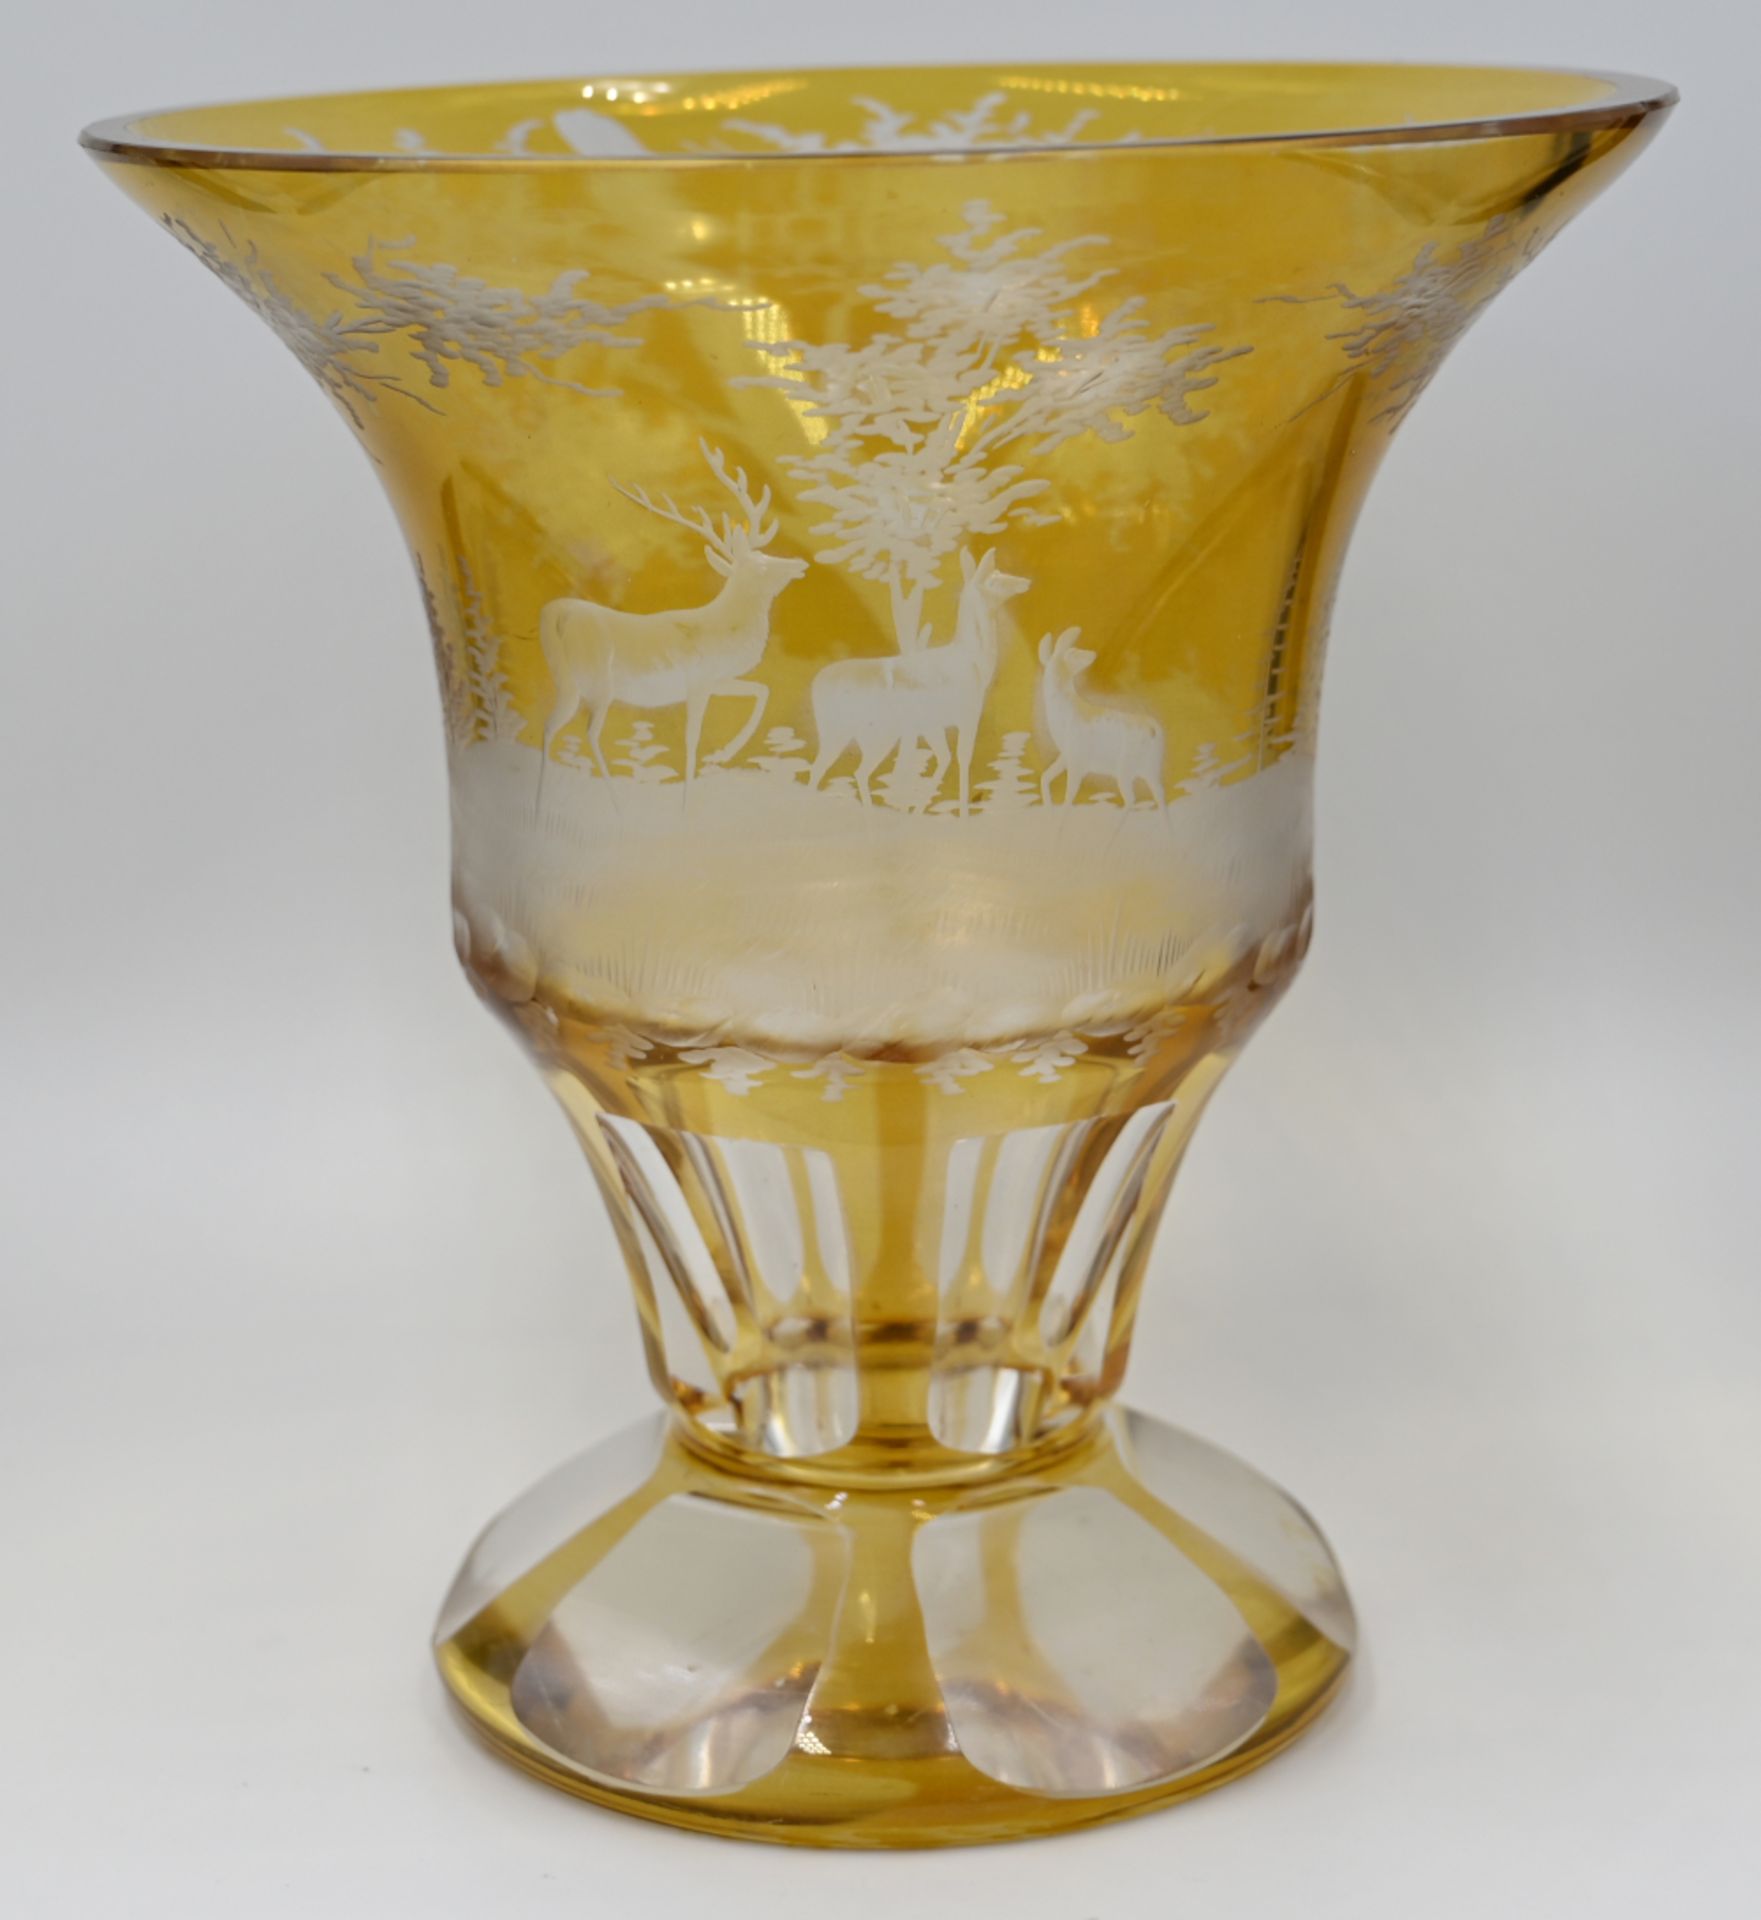 1 Trichtervase Glas wohl um 1900, bernsteinfarben/transparent, z.T. geschliffen "Waldszene mit Hirsc